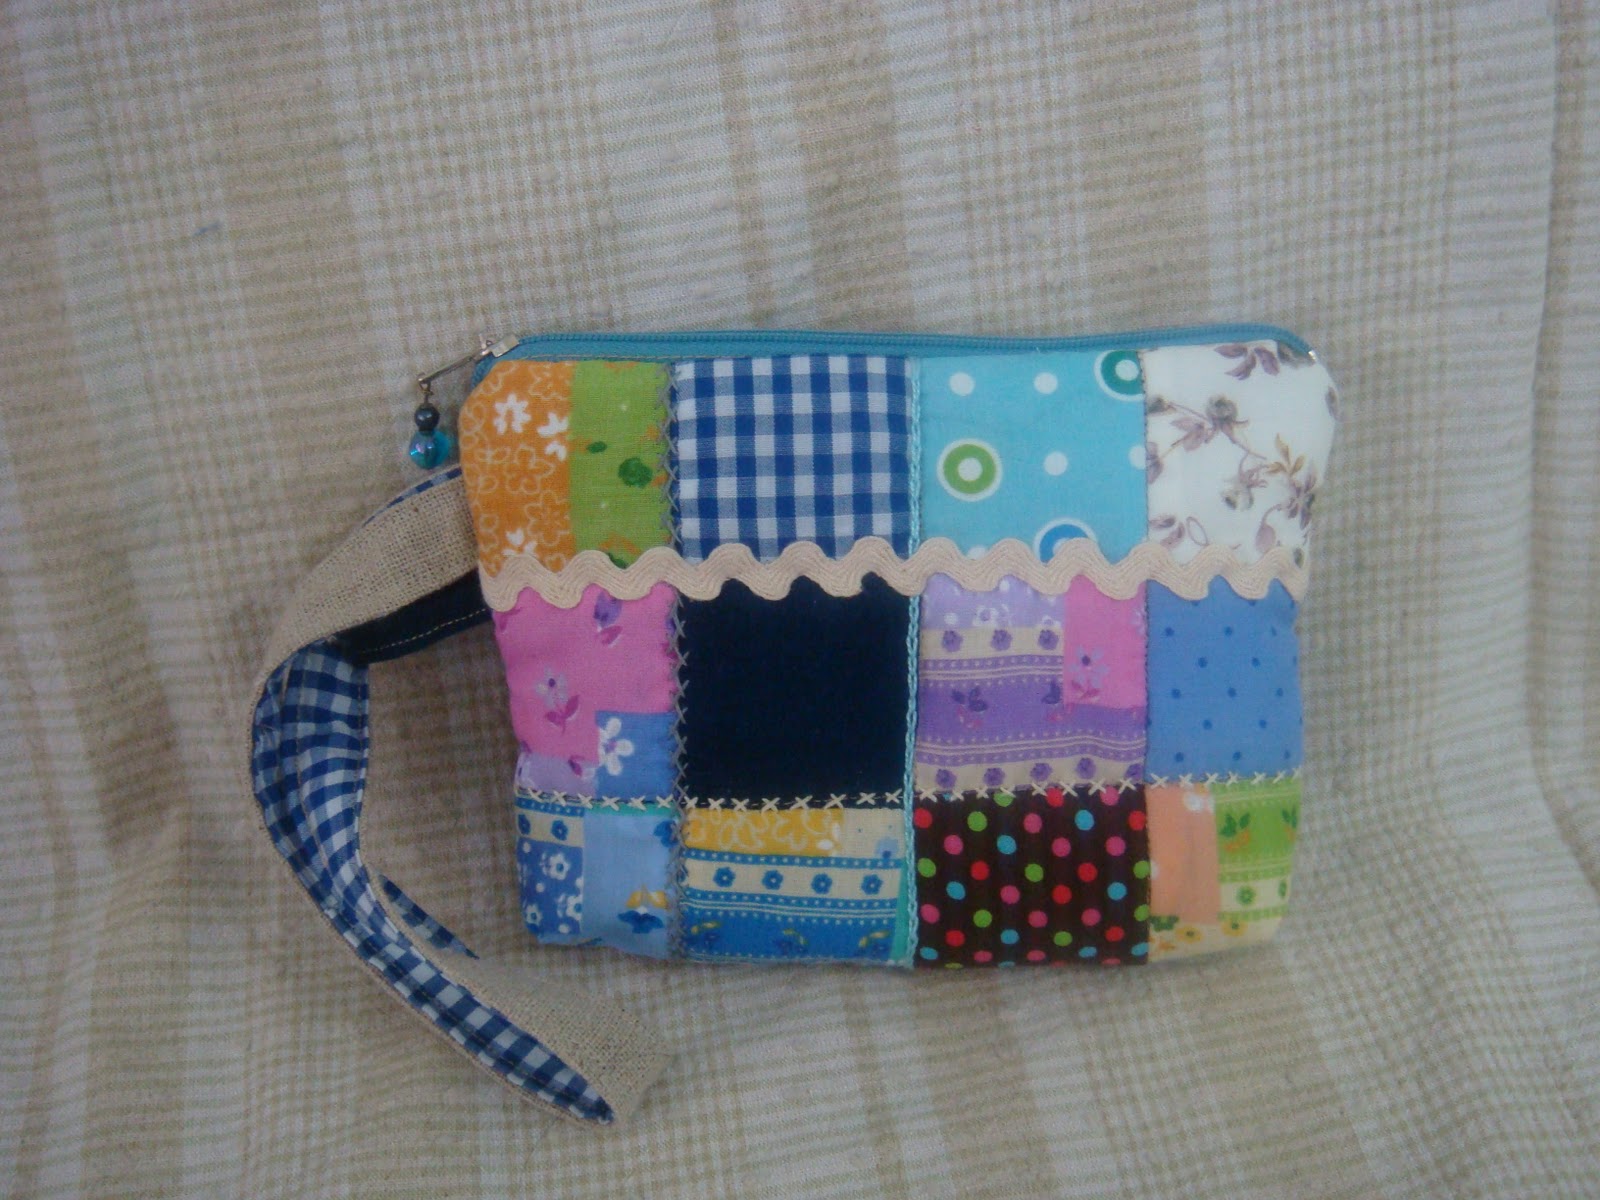 貓頭鷹拼布造型零錢包 【222275】:Kiro貓拼布包包飾品